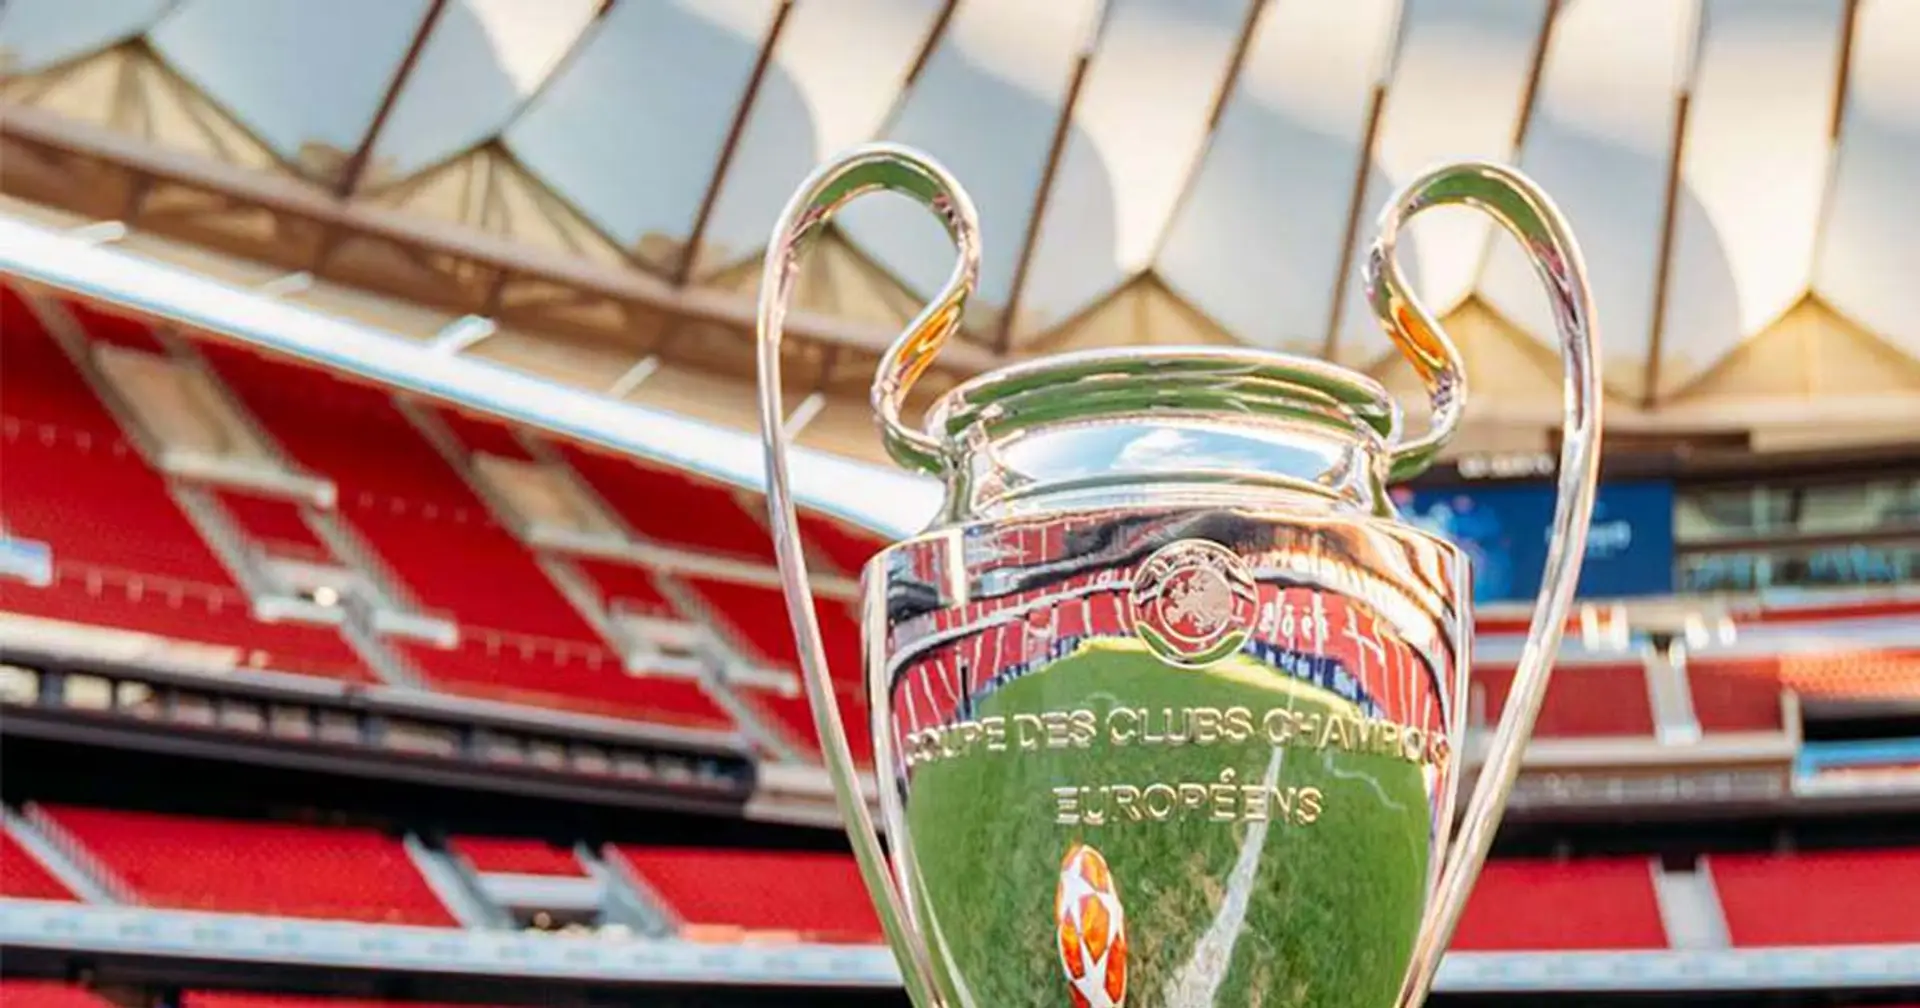 L'UEFA aurait demandé à l'Atletico Madrid d’accueillir la finale de la Ligue des Champions 2019/20